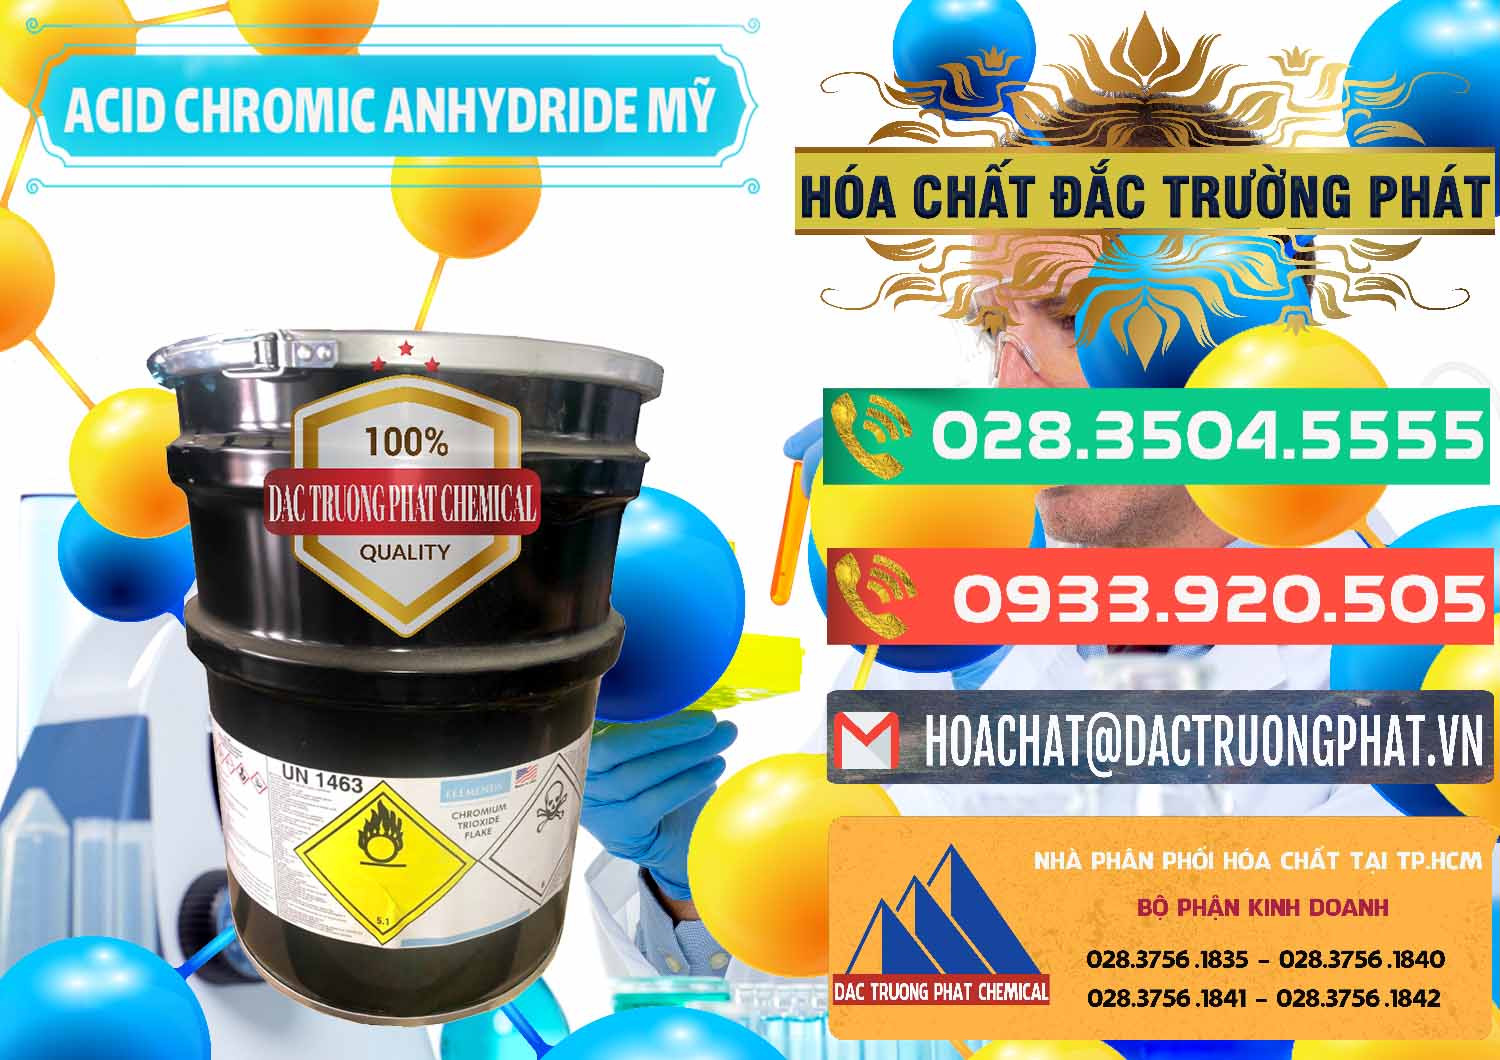 Cty cung cấp & bán Acid Chromic Anhydride - Cromic CRO3 USA Mỹ - 0364 - Cung cấp & phân phối hóa chất tại TP.HCM - congtyhoachat.com.vn